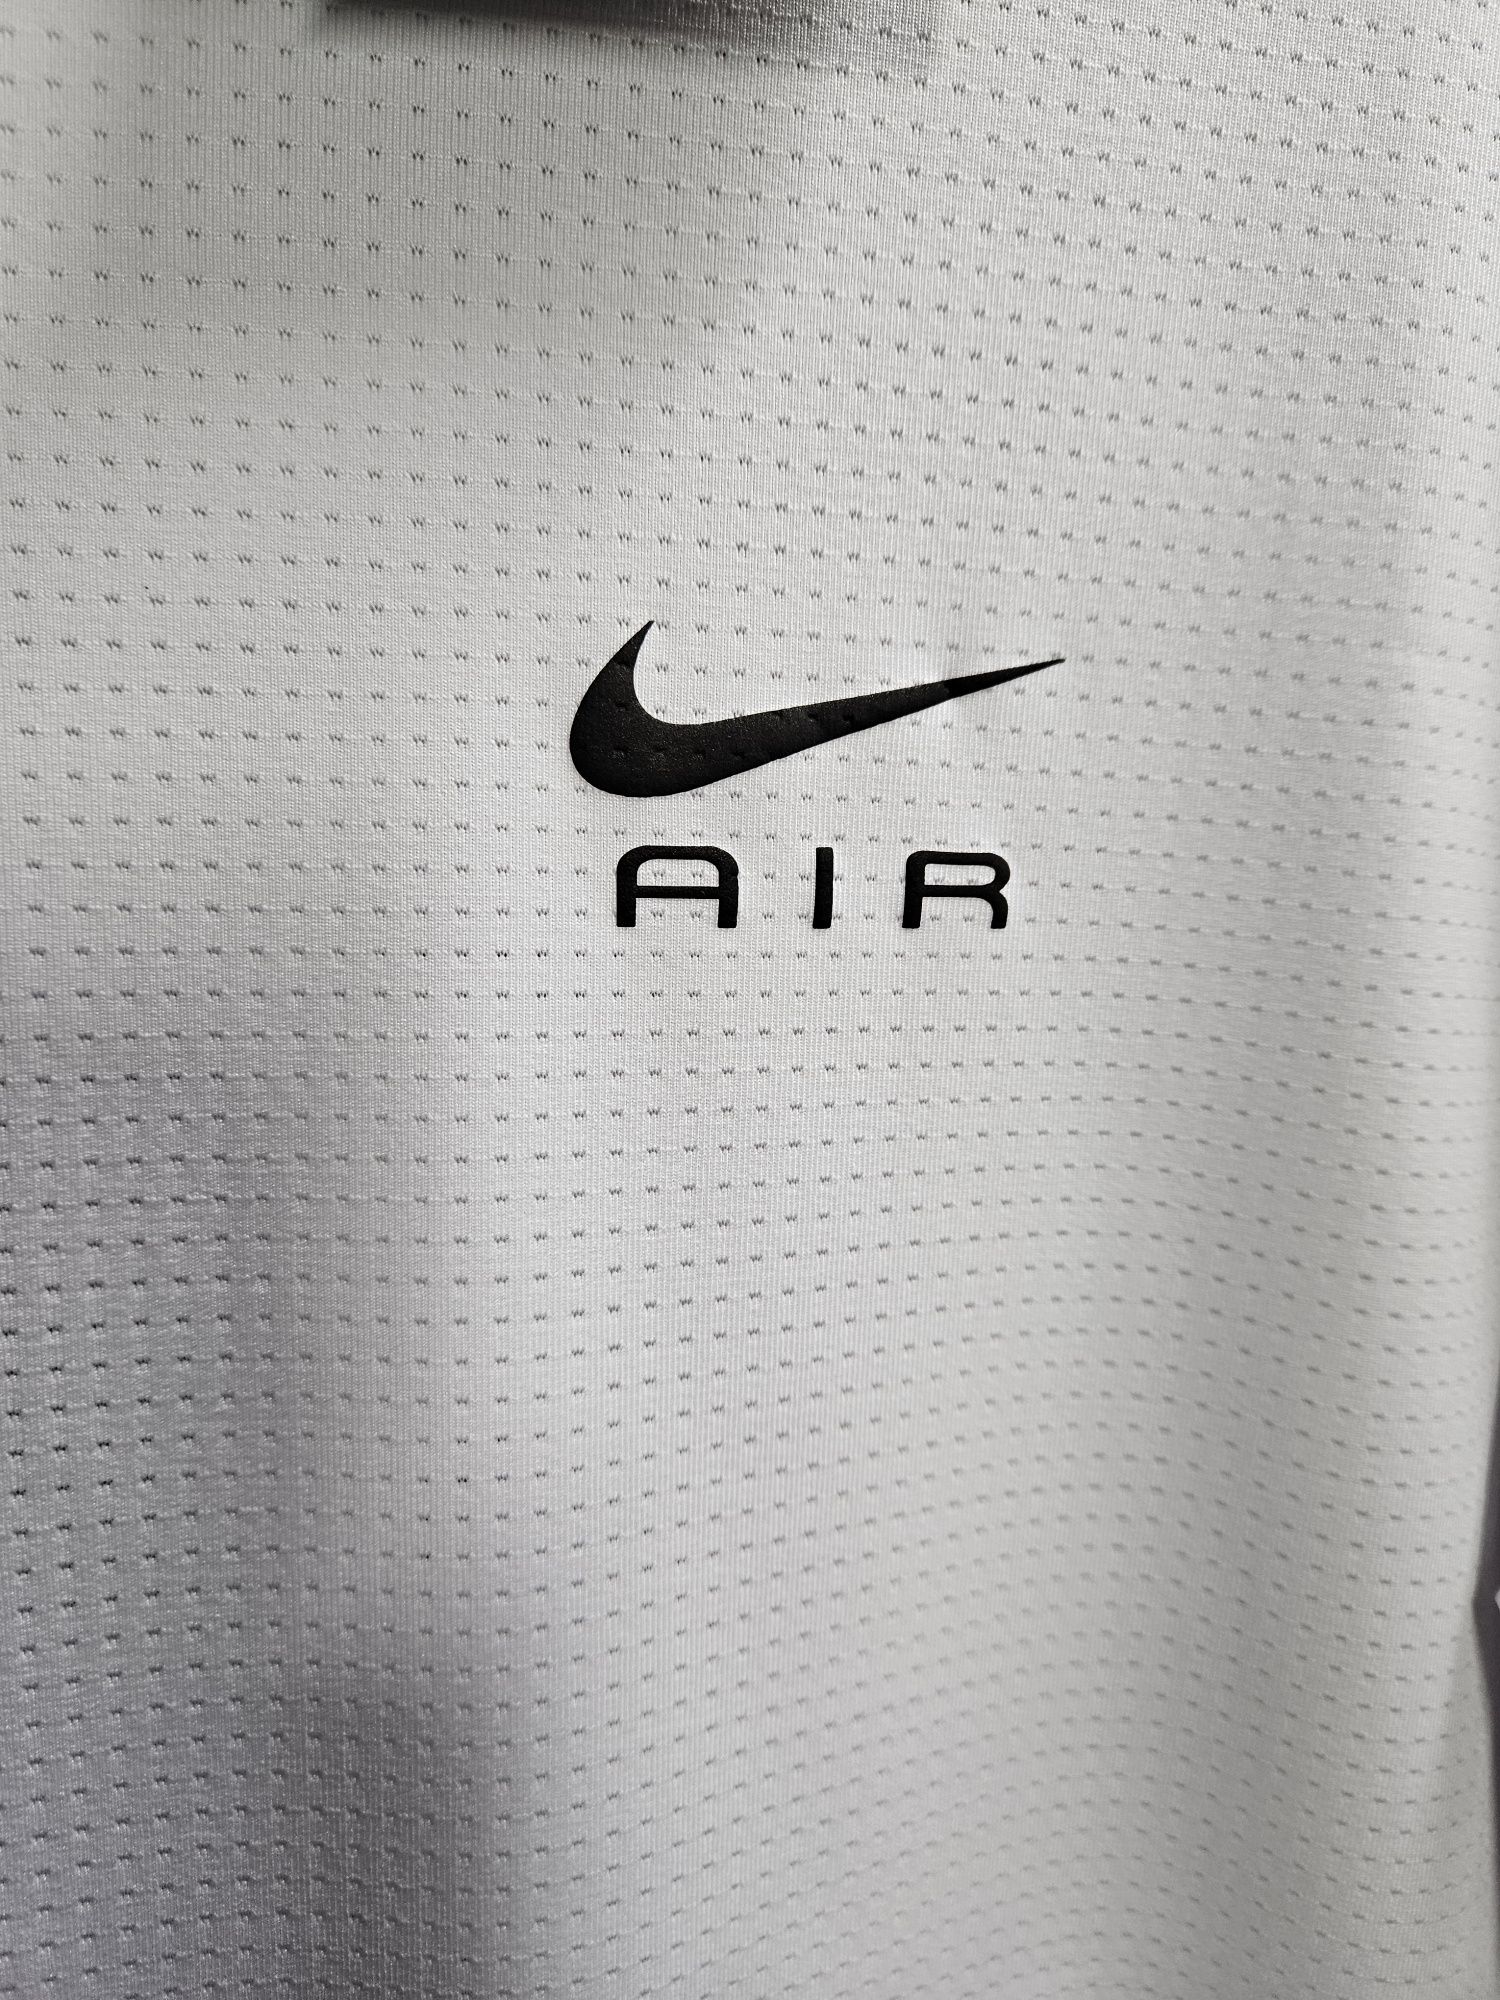 Футболка спортивная сток Nike, Adidas, UA